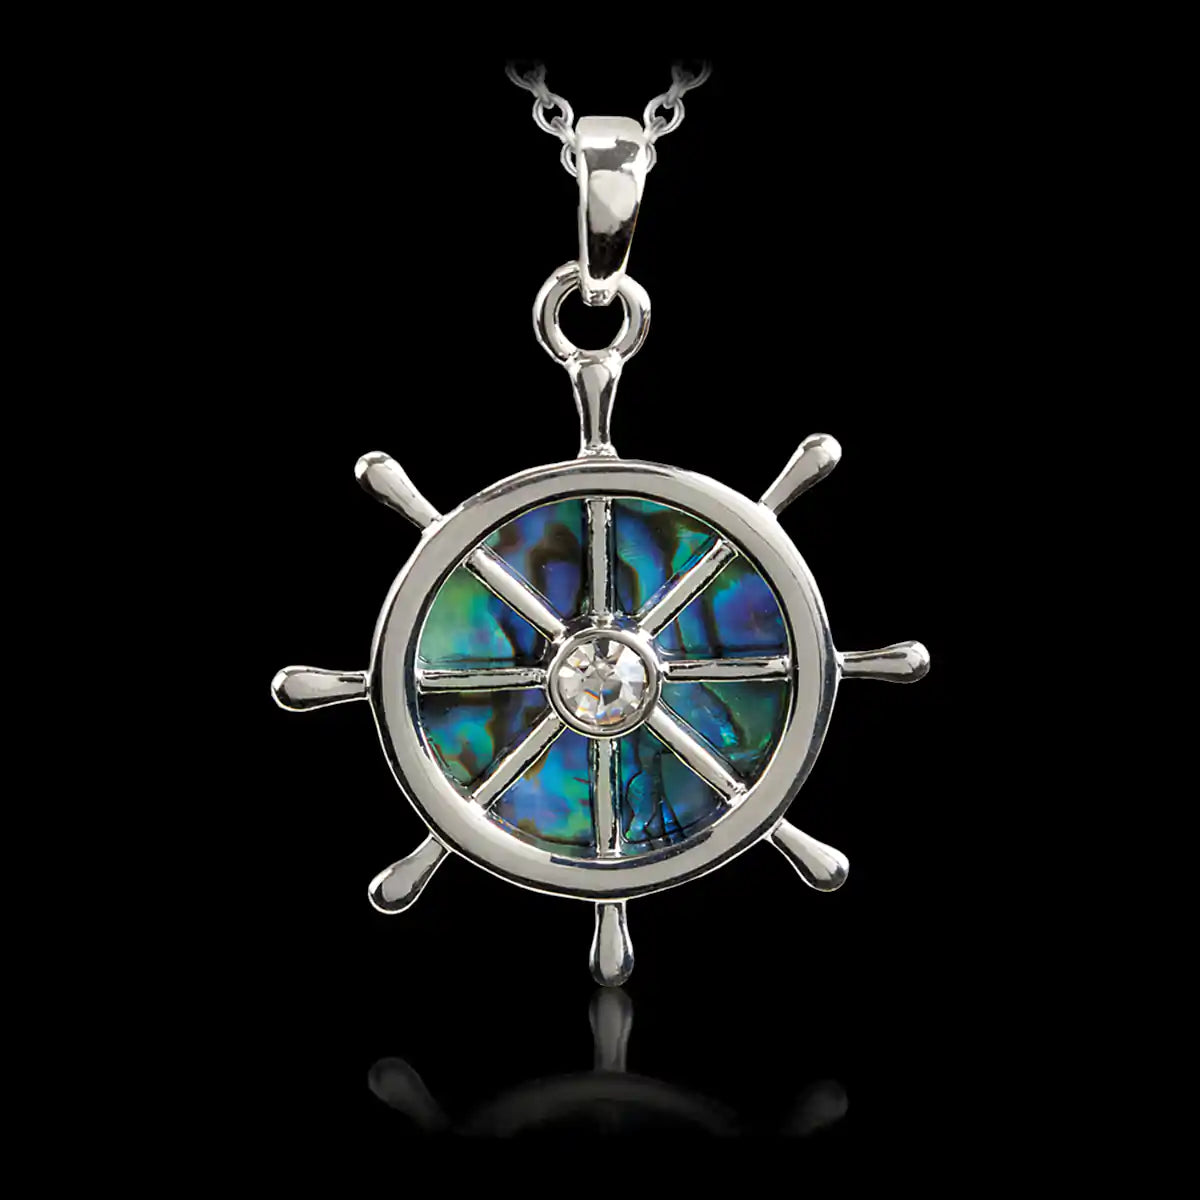 Glacier pearle ship's wheel necklace